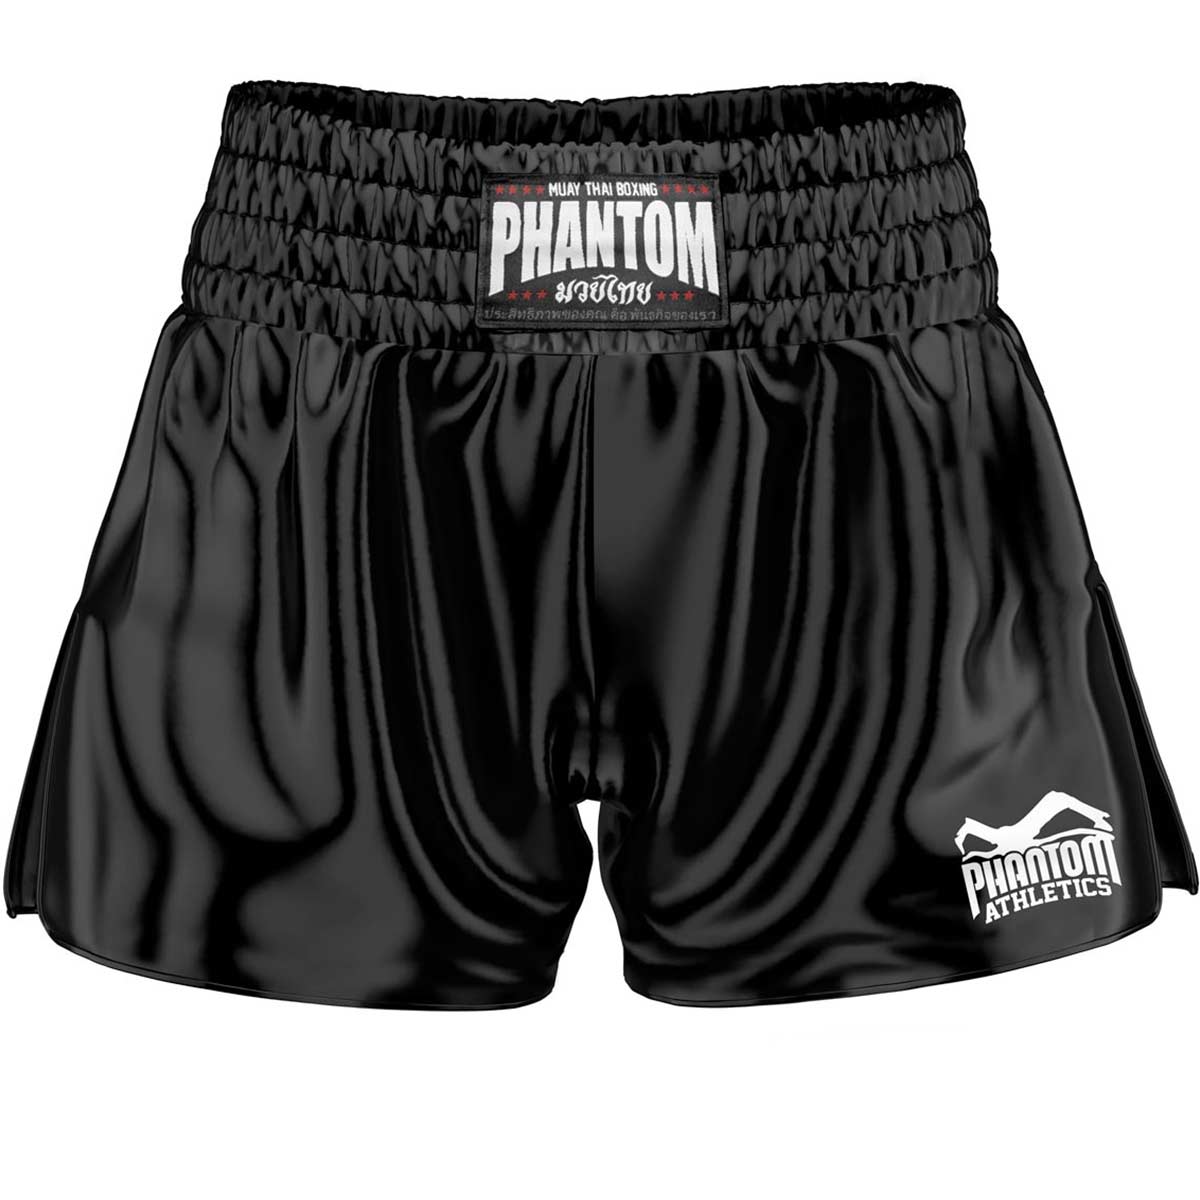 Muay Thai shorts team - black